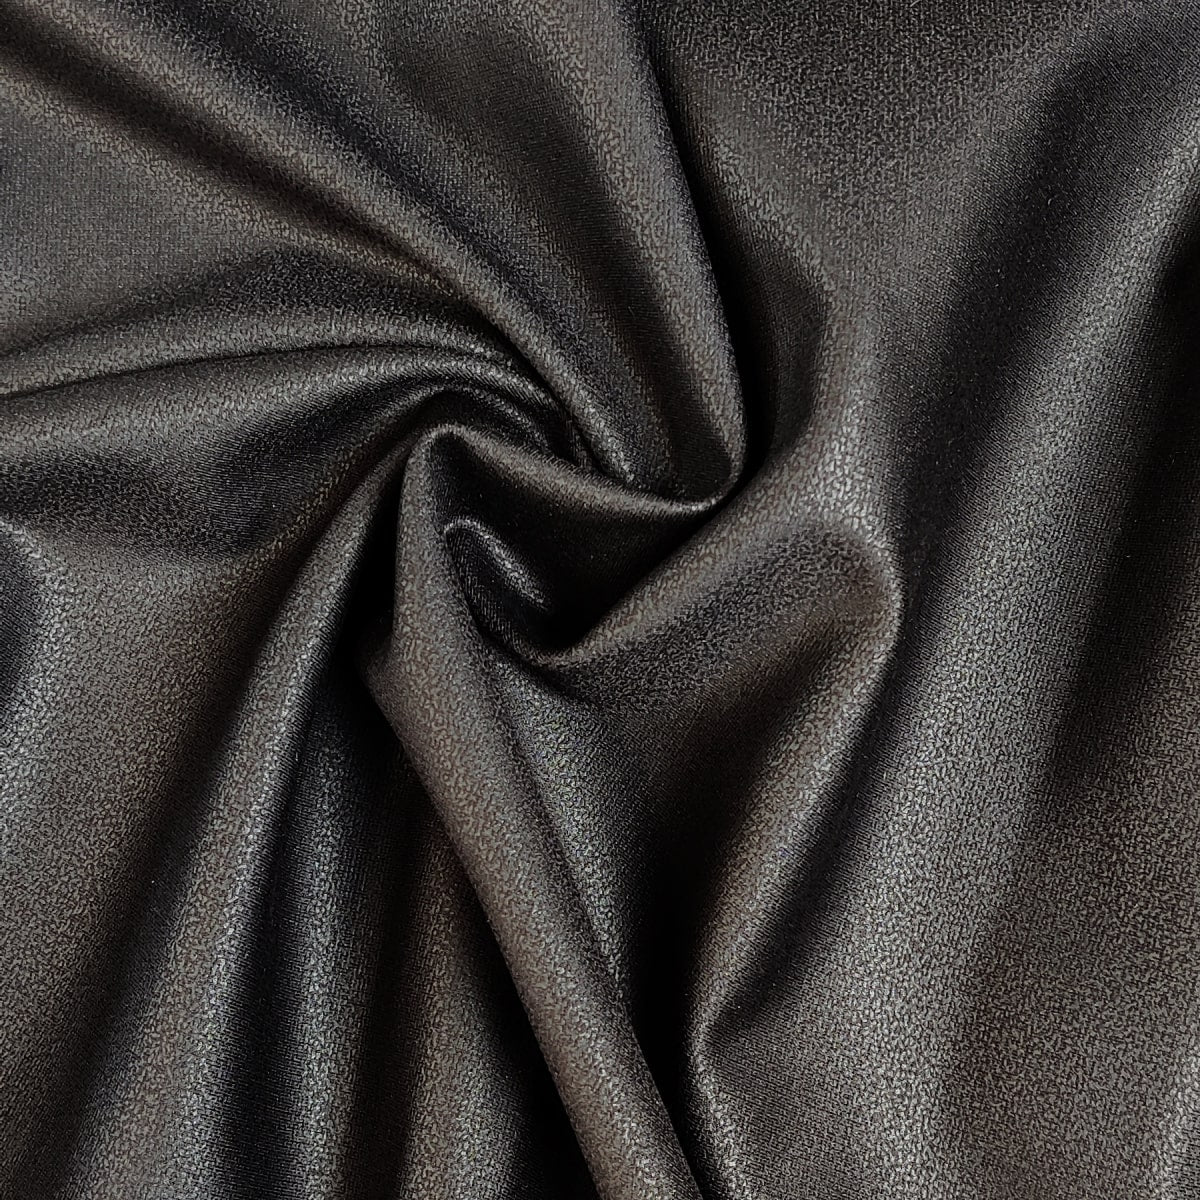 Nylon Ponte de Roma Knit Fabric - Leather Effect – Les Tissées